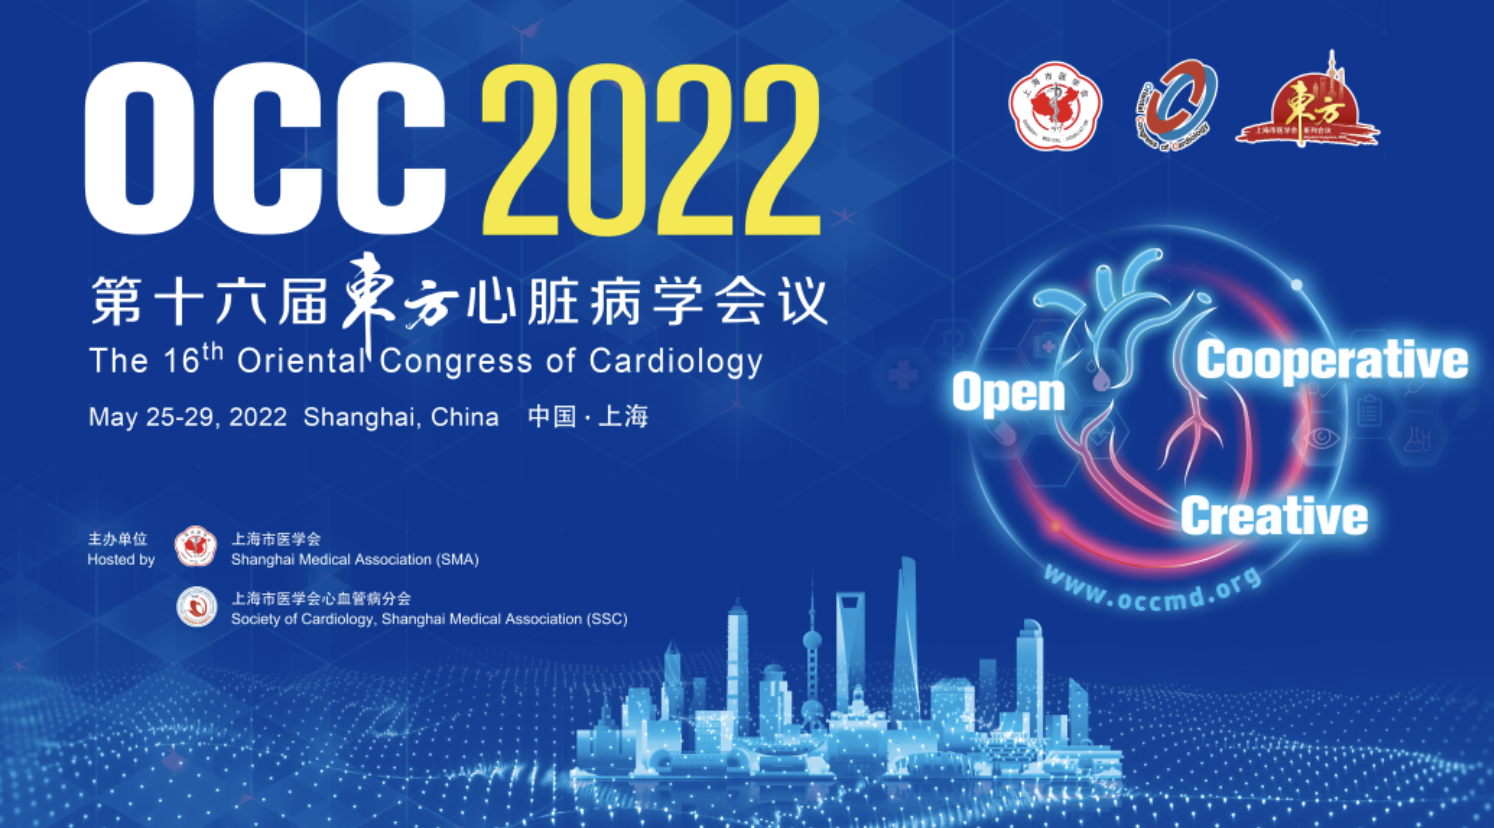 OCC 2022 | PIANO评分在急性心肌梗死预后评估和指导急诊PCI术血栓抽吸中的临床价值